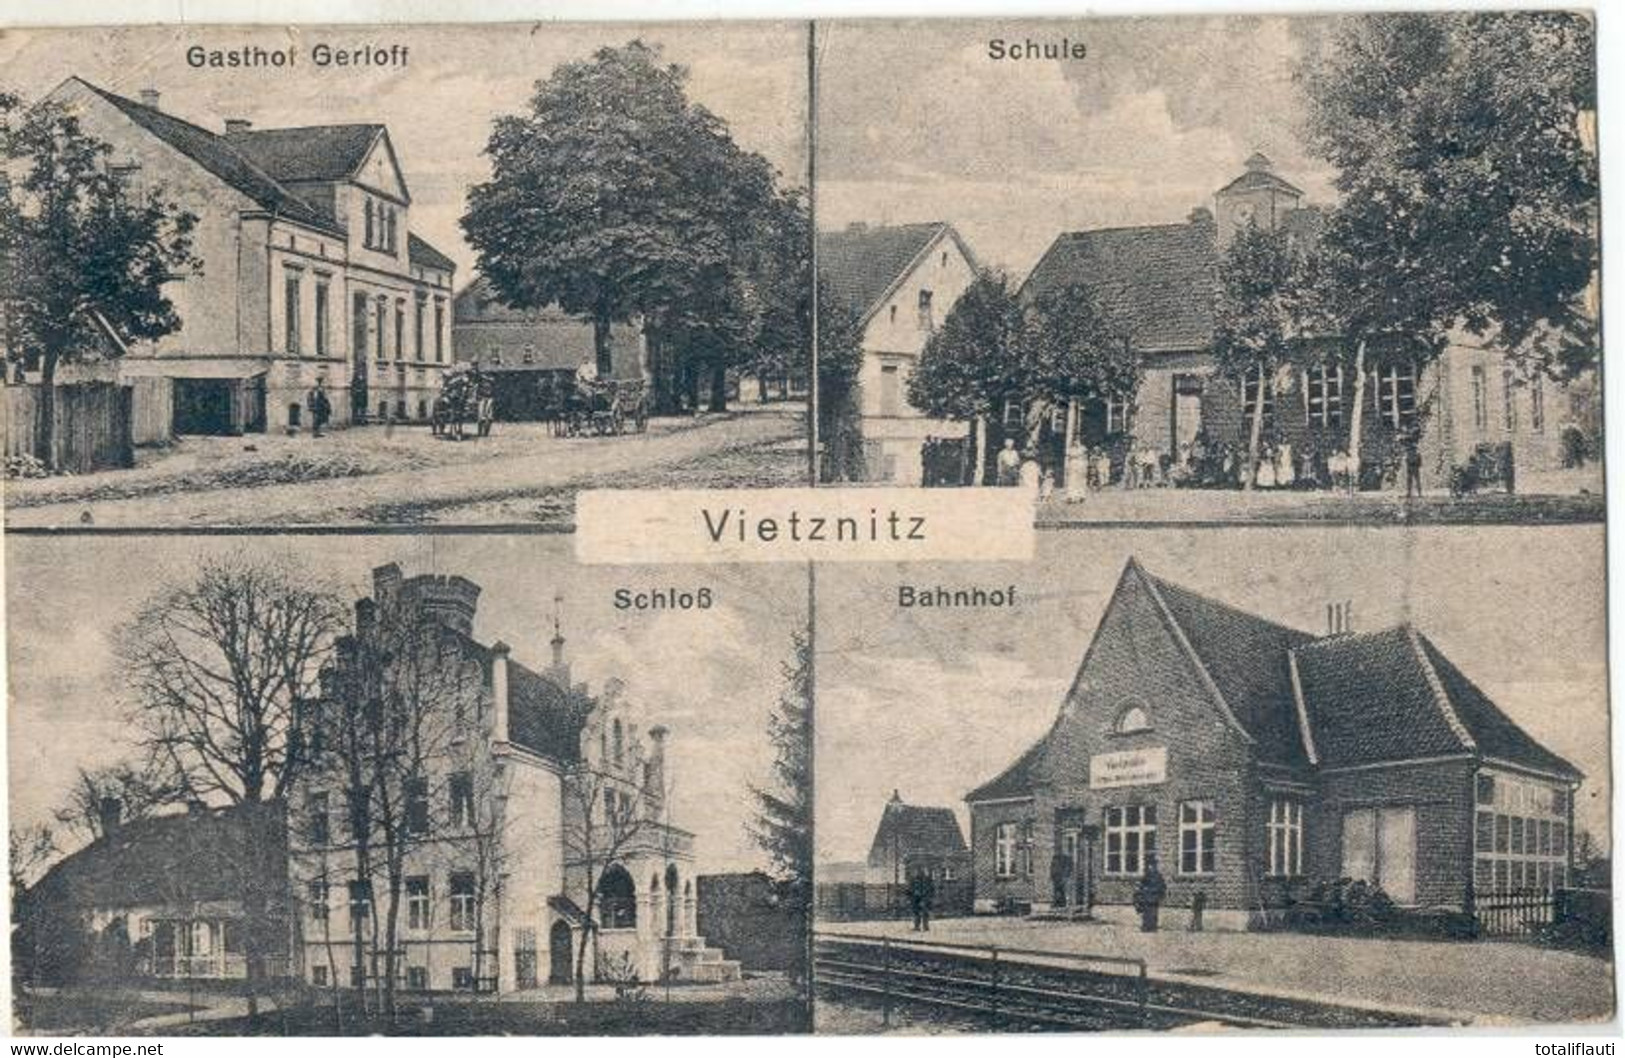 Vietznitz Bahnhof An Bahn Hamburg Berlin Schloß Gasthof Gerloff Schule 28.8.1920 Gelaufen - Friesack